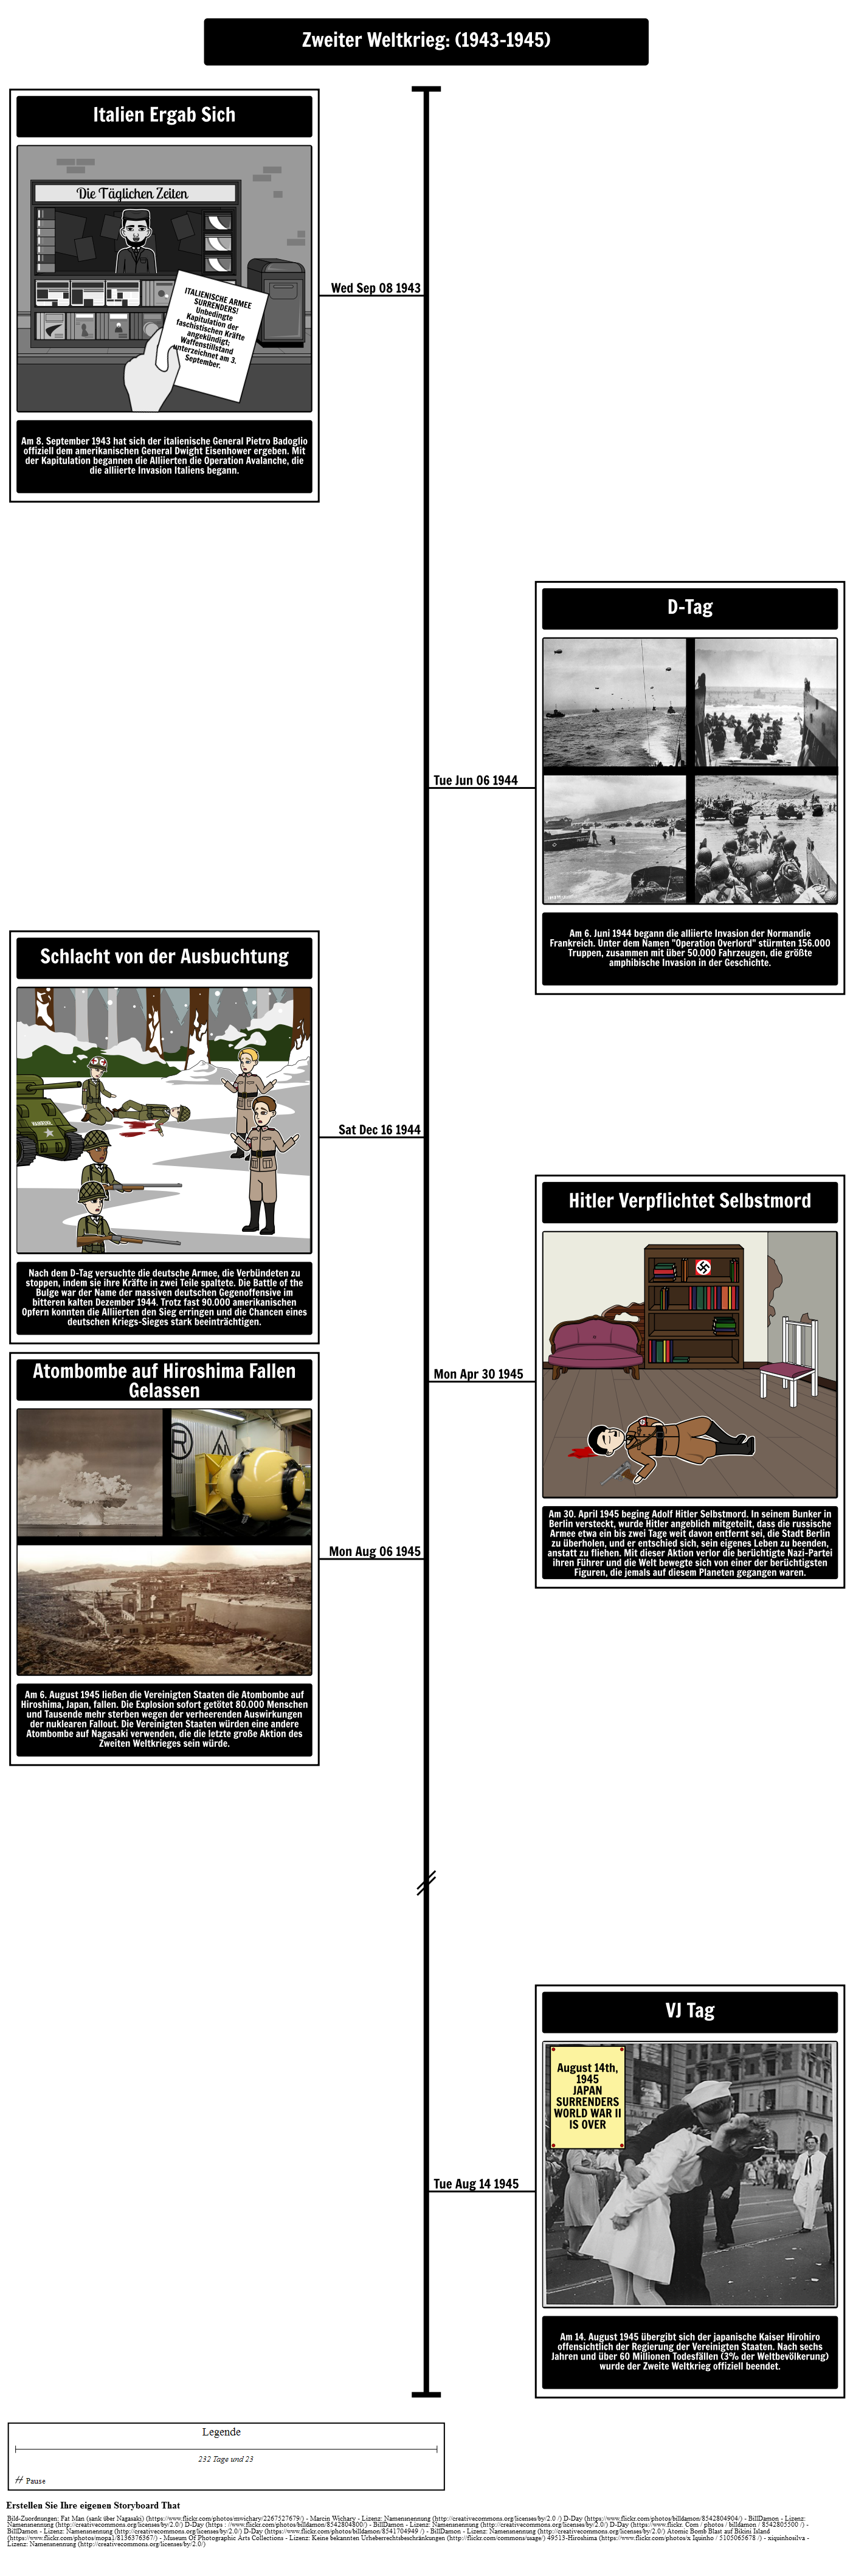 Zweiter Weltkrieg Timeline (19431945) Storyboard